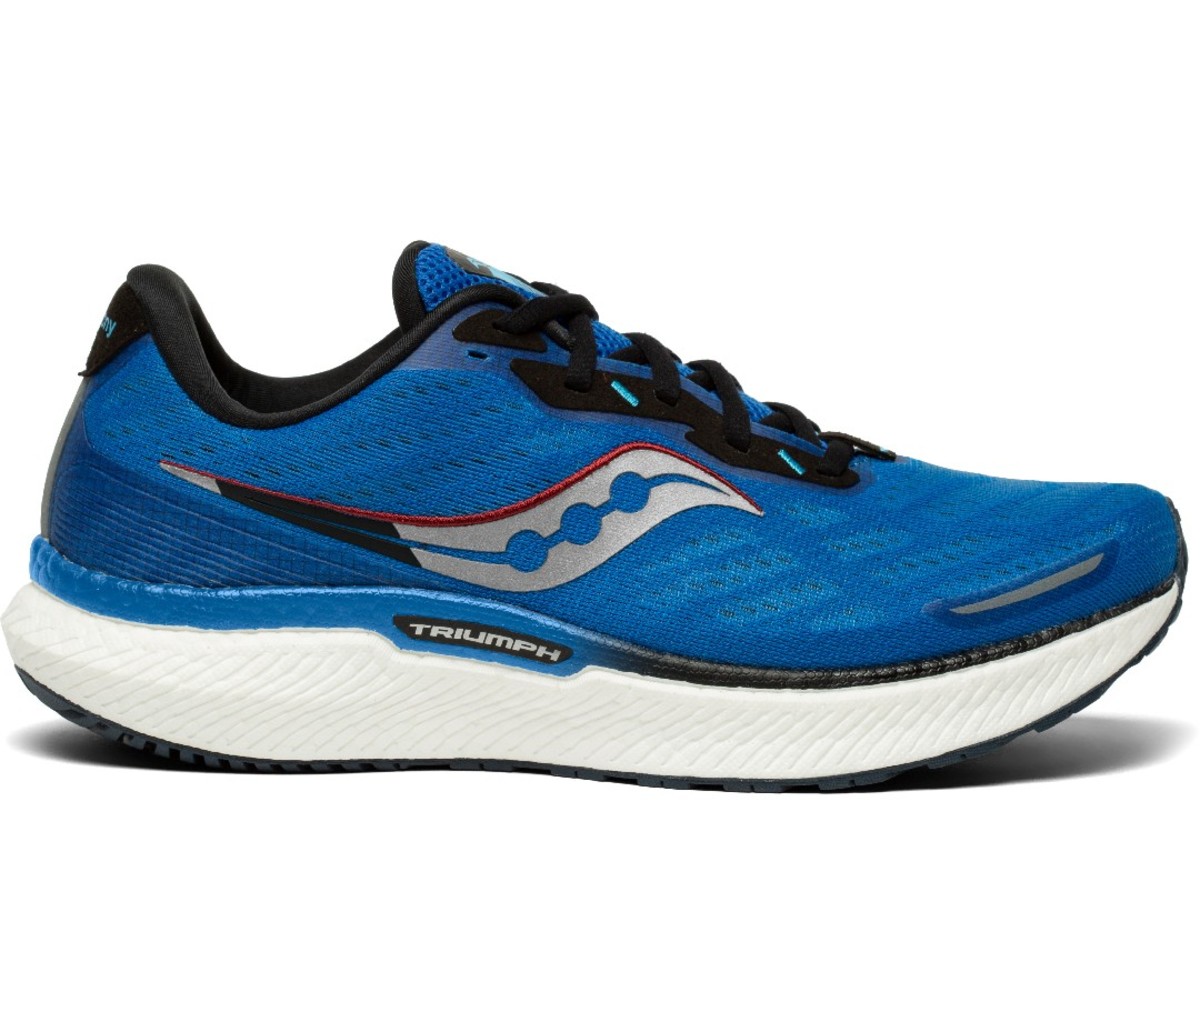 Blue Saucony Men’s Triumph 19 Wide running shoe